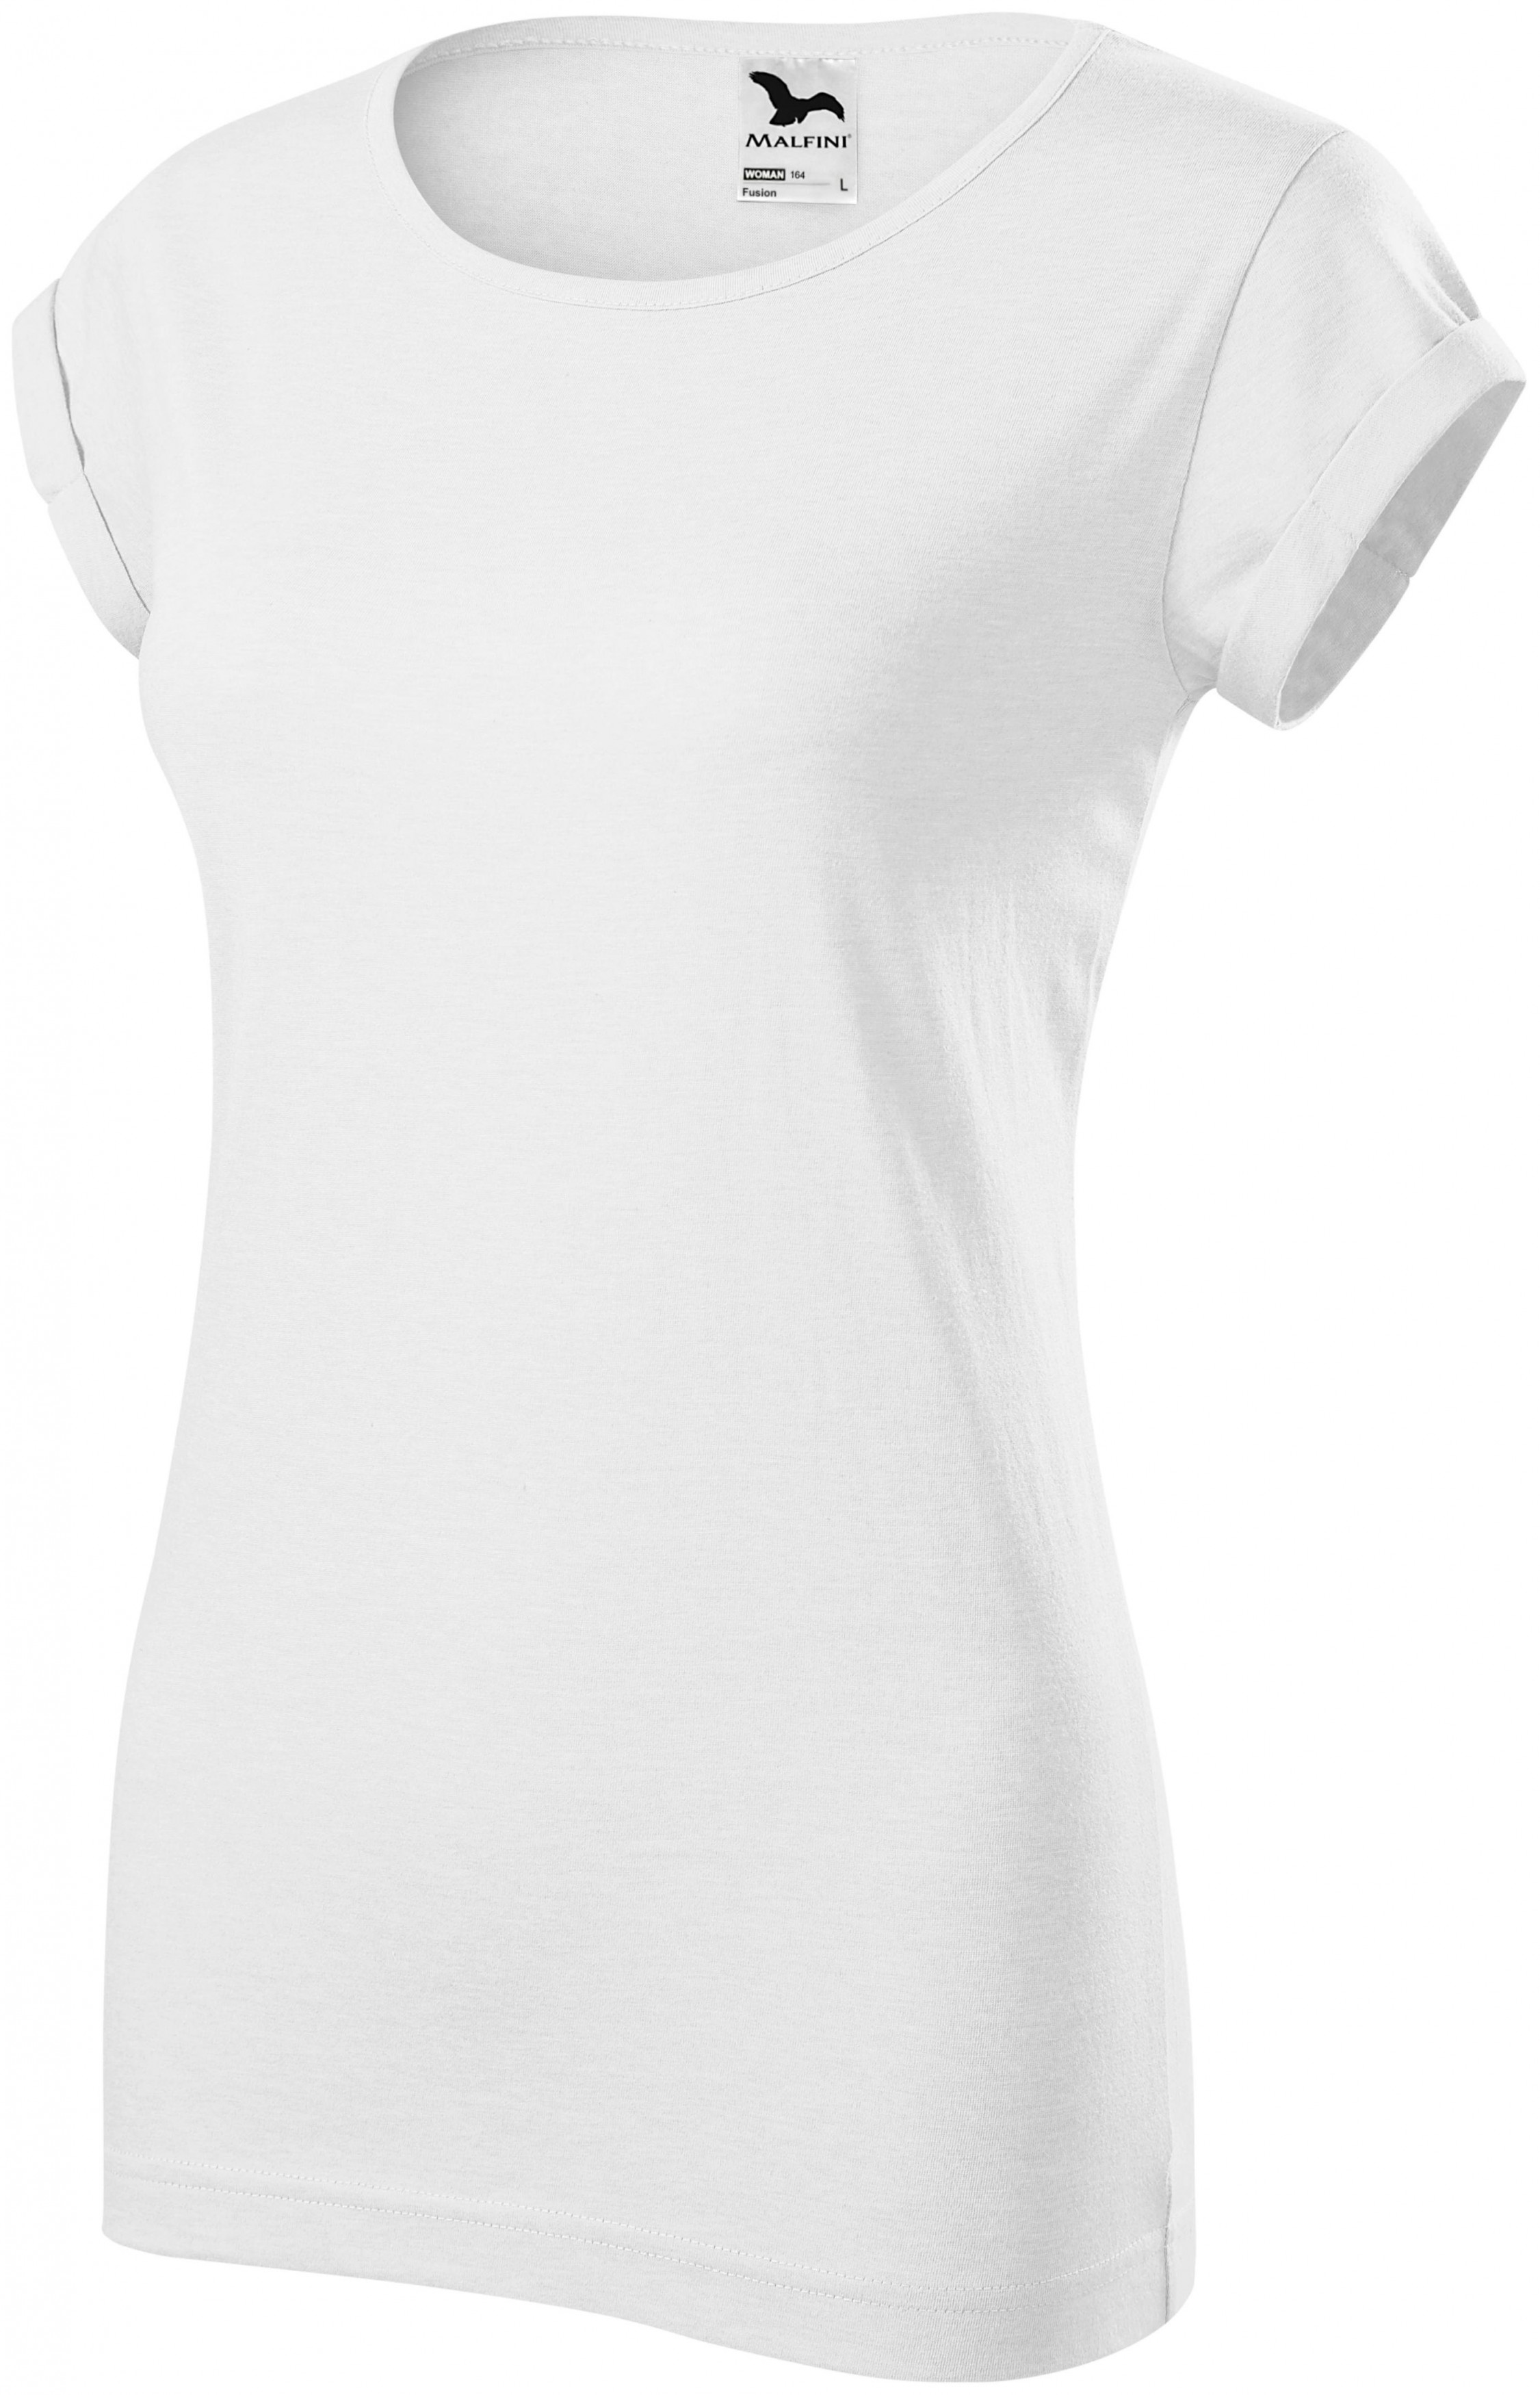 Dámske tričko s vyhrnutými rukávmi, biela, 2XL